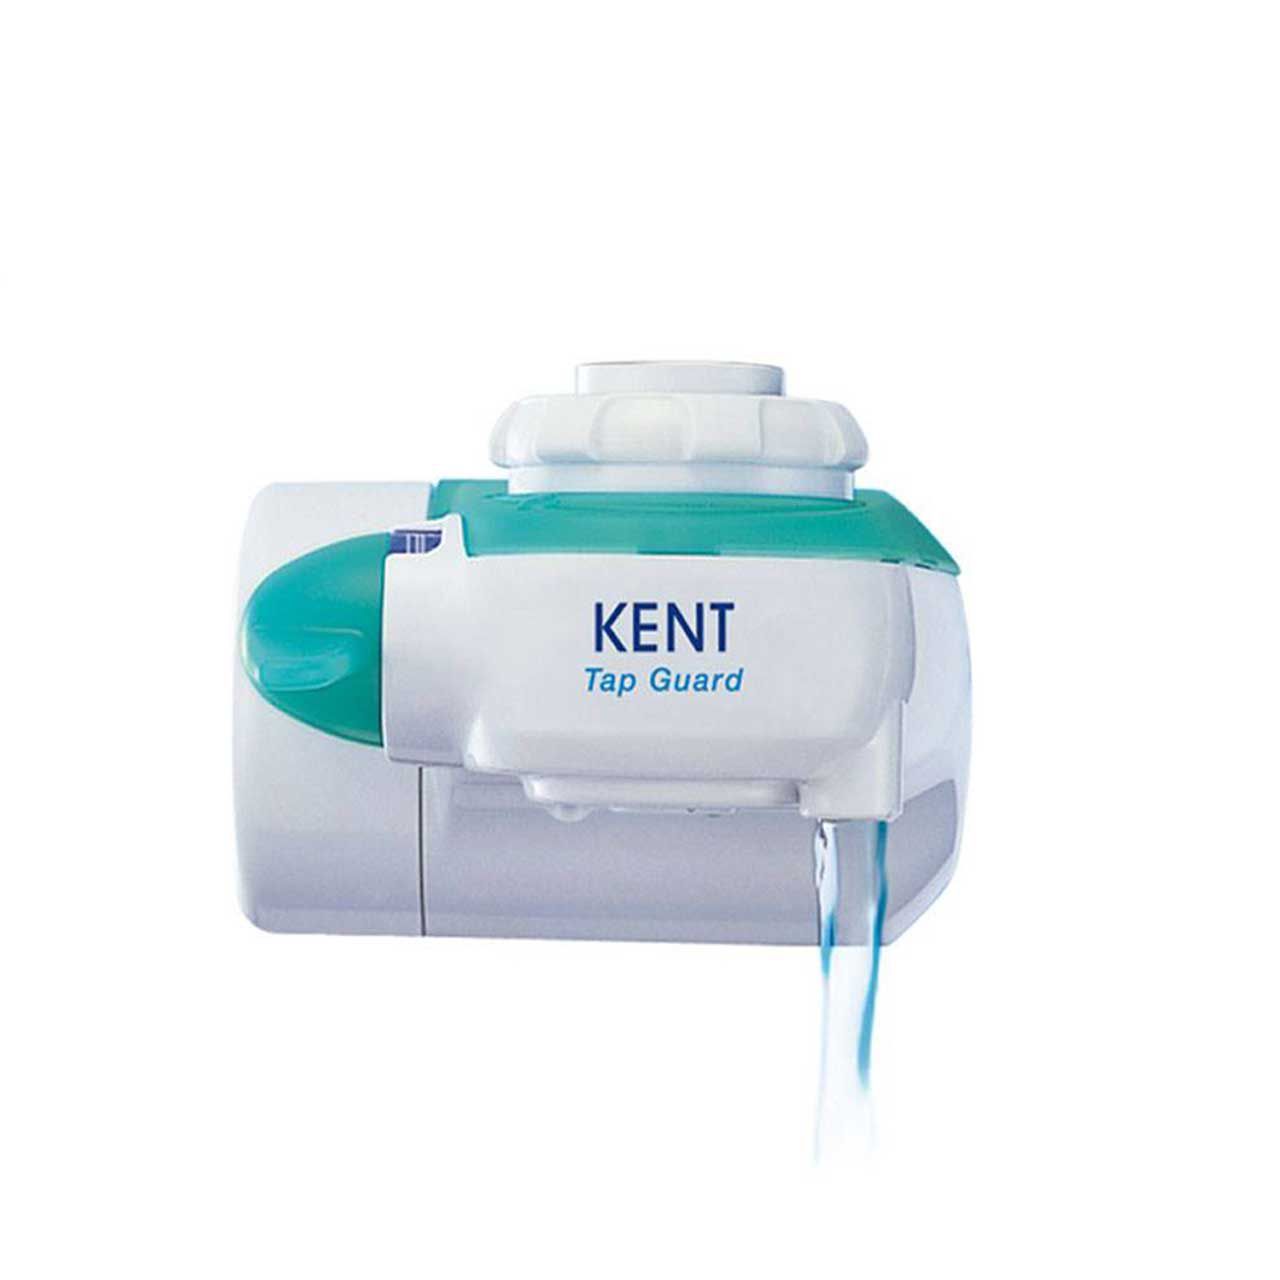 دستگاه تصفیه آب سر شیری کنت (Kent) مدل Tap Guard